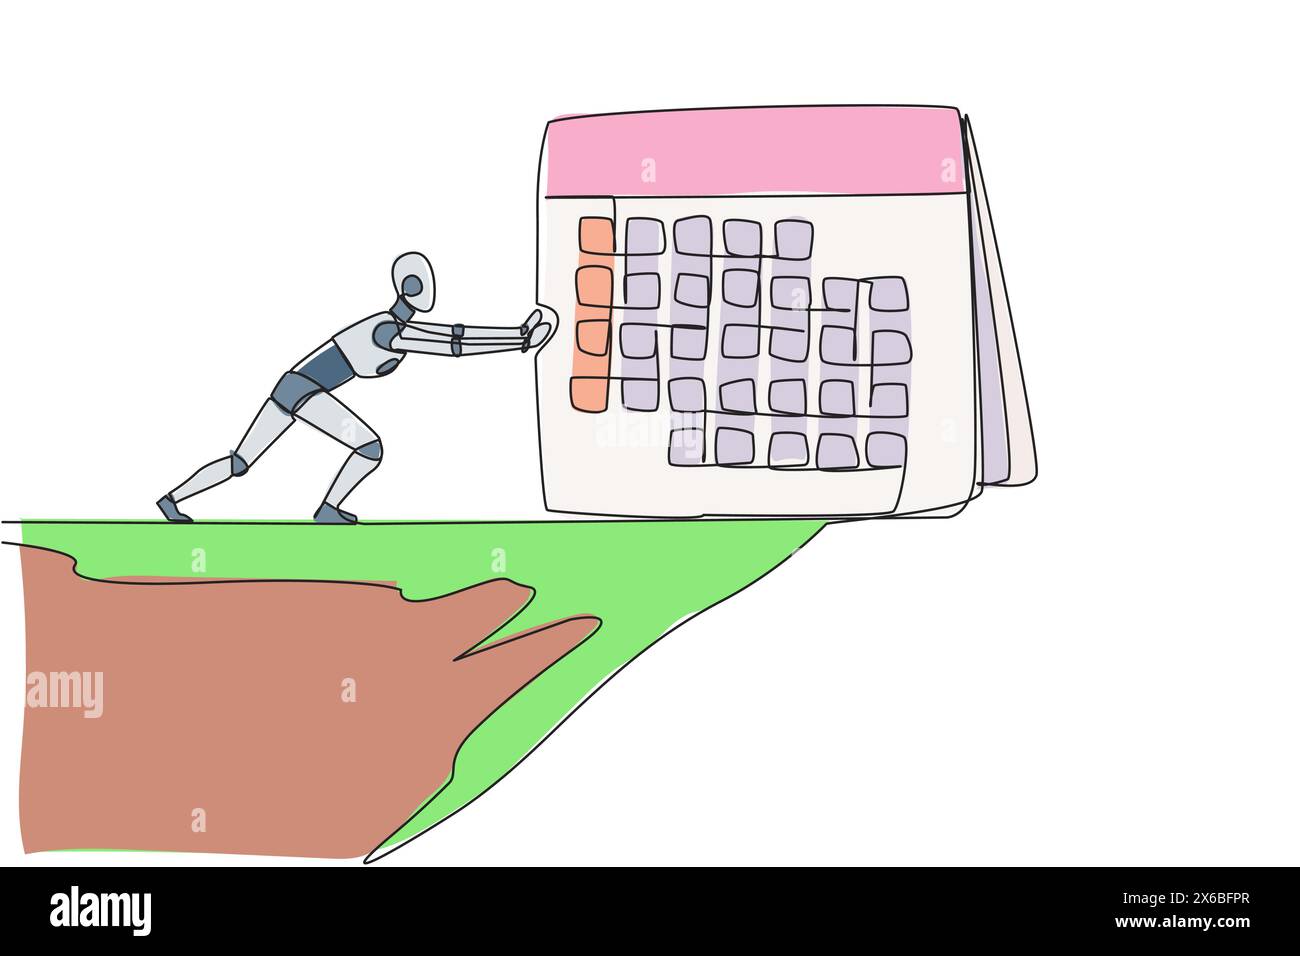 Ein Roboter mit kontinuierlichem Zeichnen einer Linie schiebt einen riesigen Schreibtischkalender vom Rand der Klippe herunter. Viele Versuche mit Robotern scheitern jeden Monat. Roboter der Zukunft. AI Stock Vektor